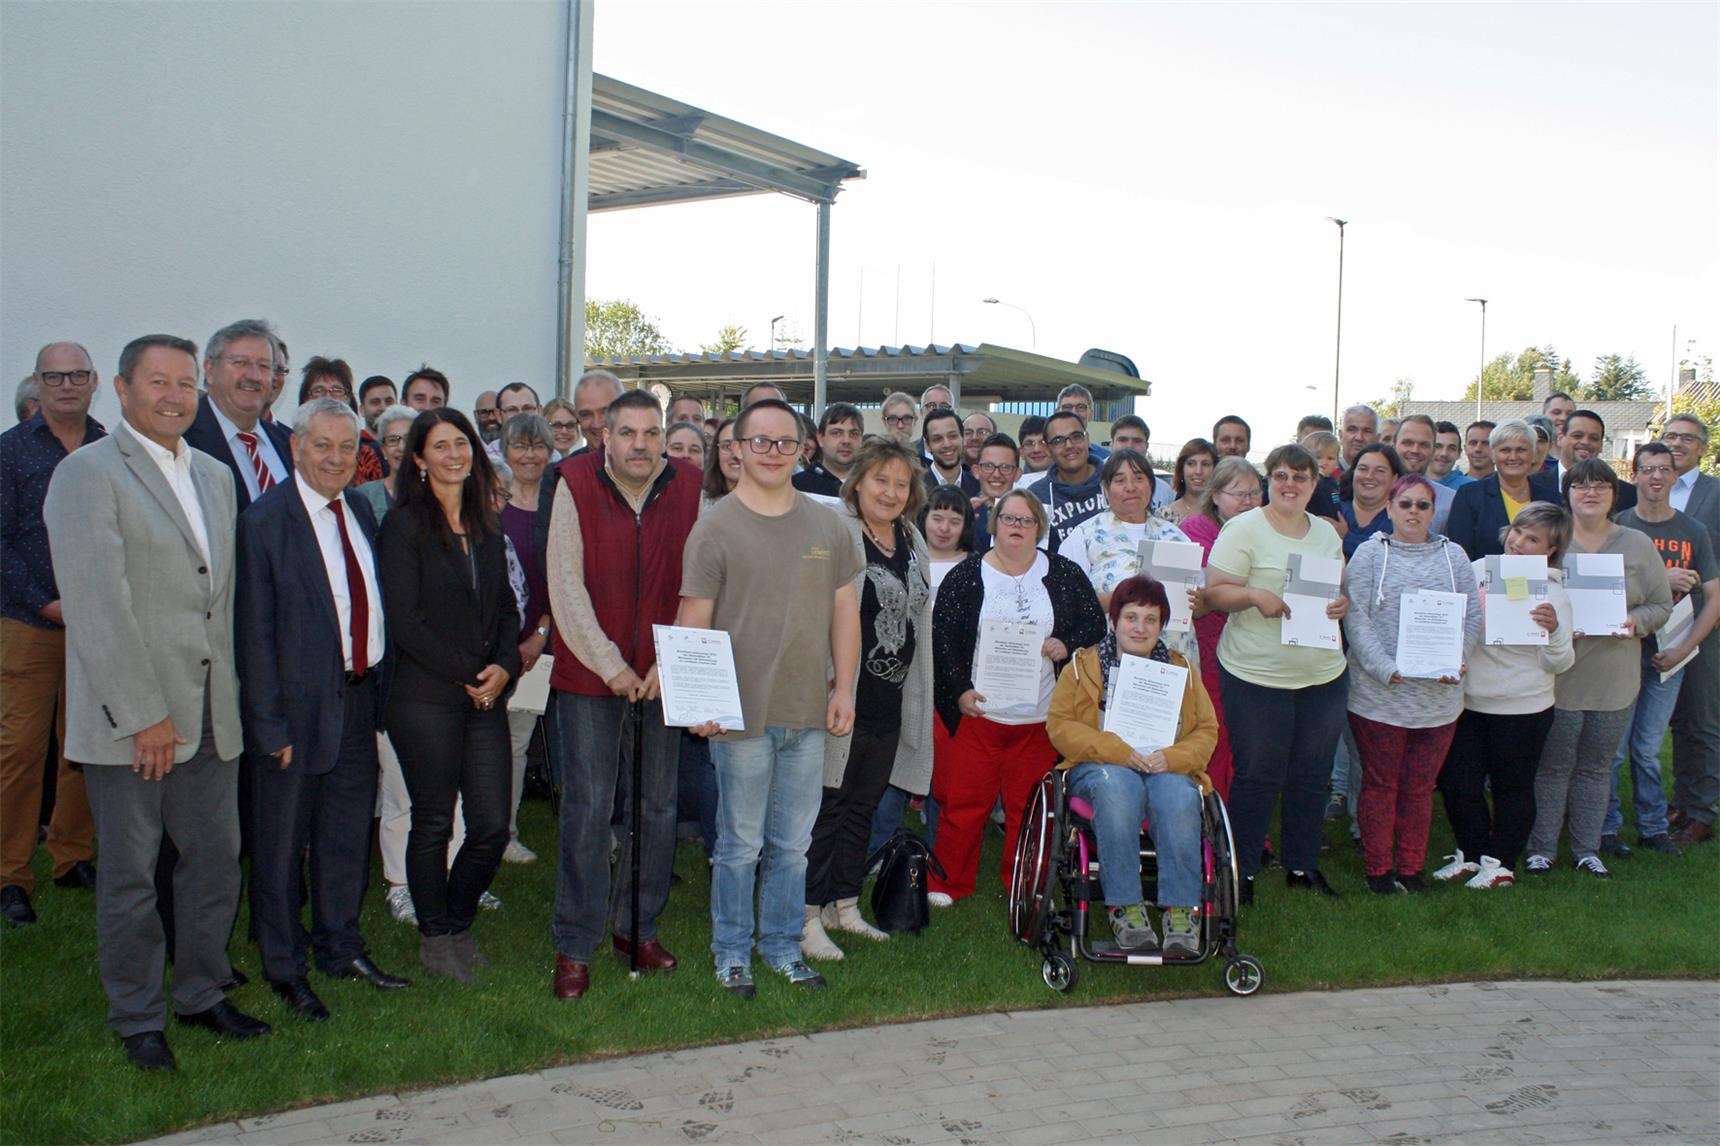 Abschlussveranstaltung der Beruflichen Aktionstage im Kreis Cochem-Zell 2019 